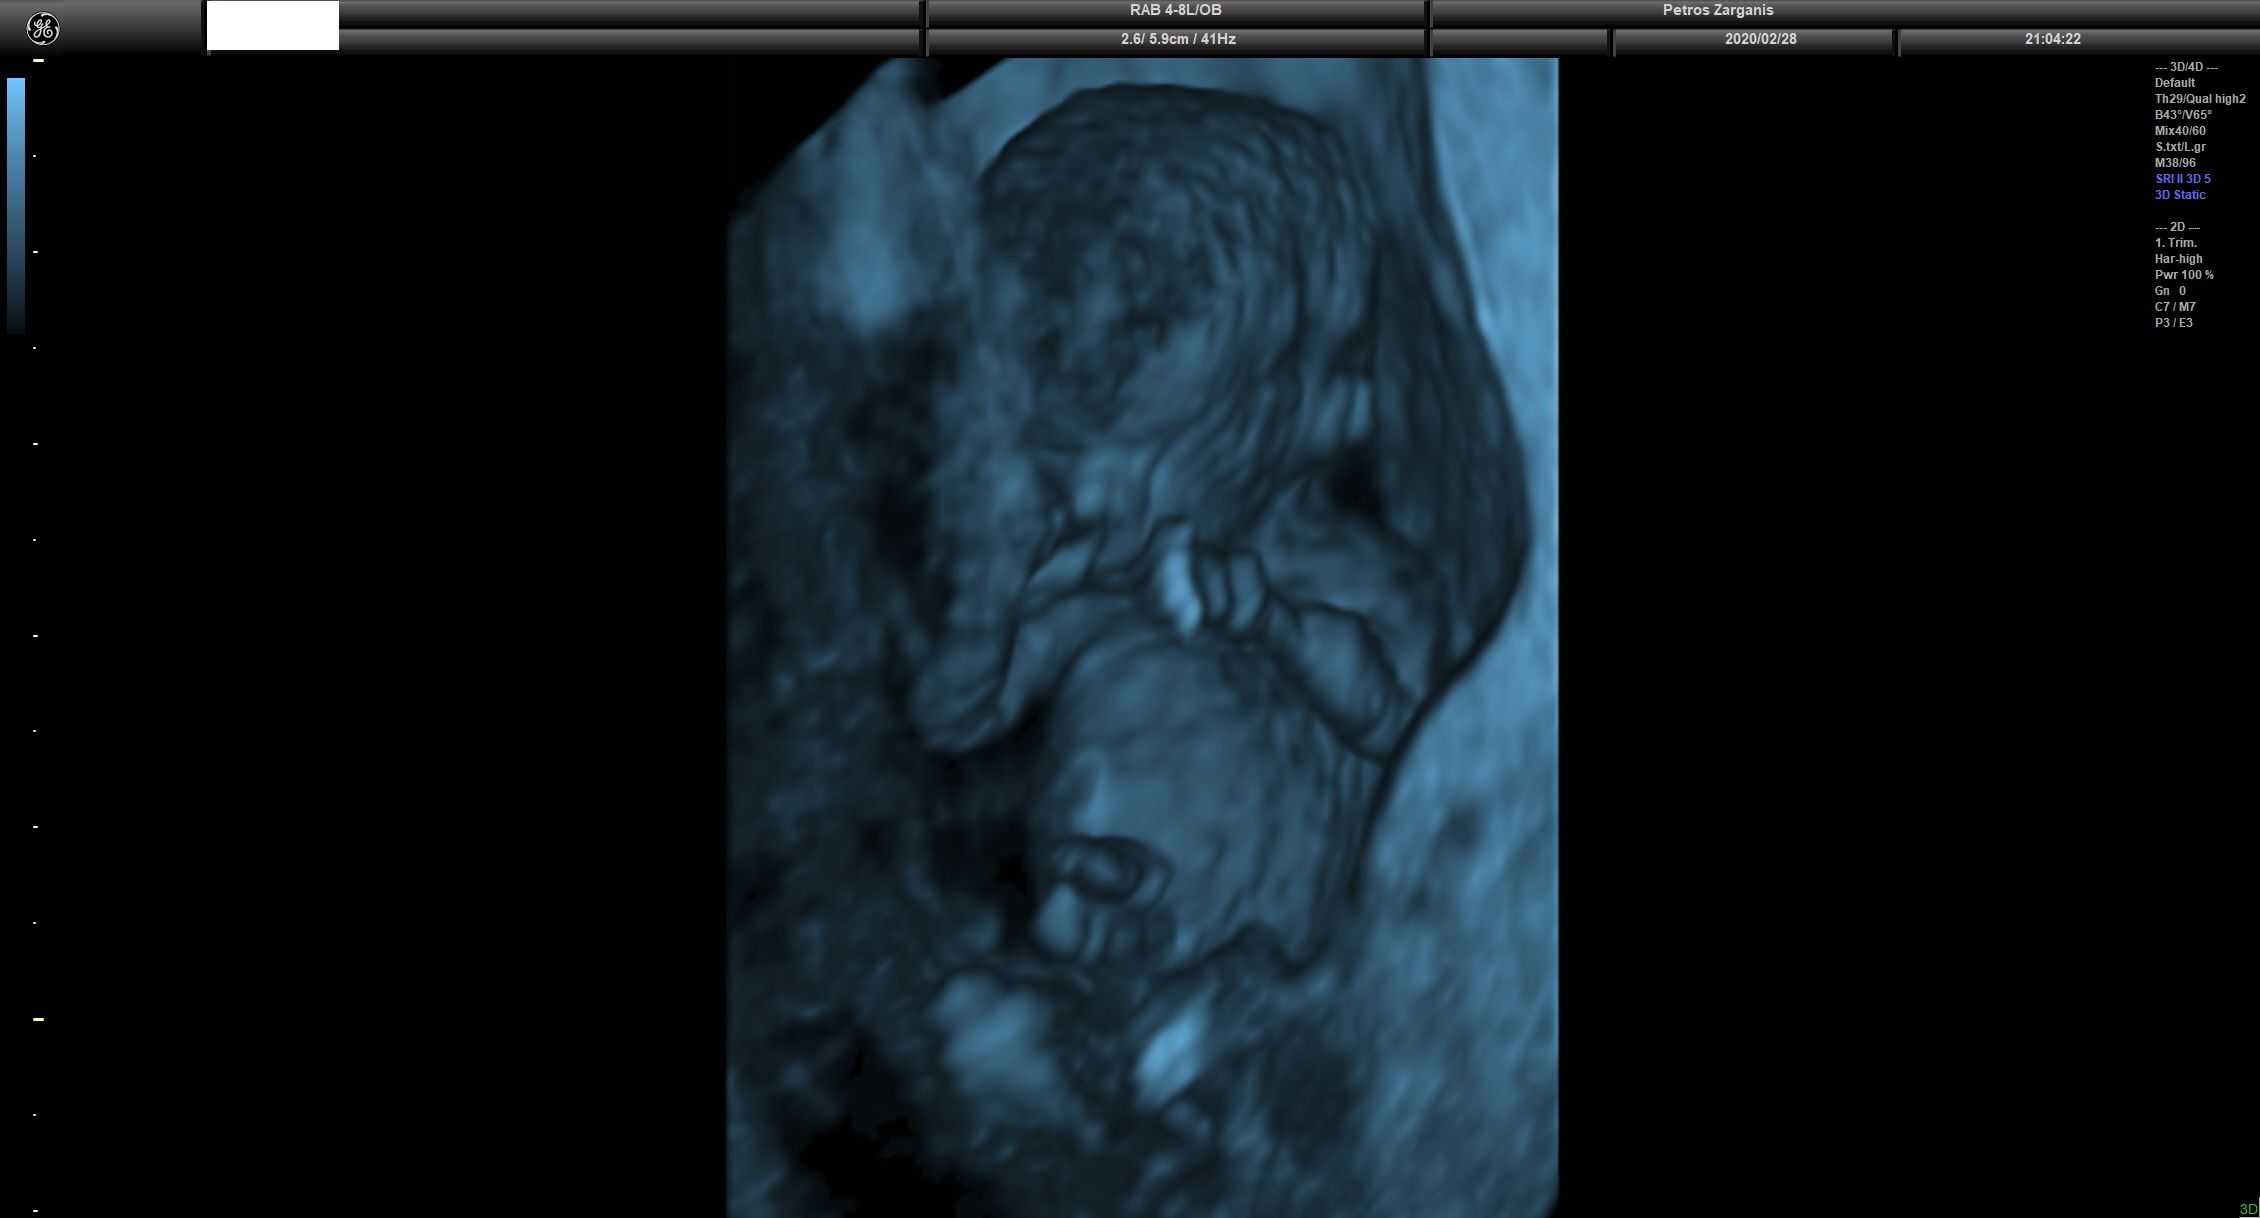 Εμβρυο 11 εβδομάδων +2 ημερών τρισδιάστατη απεικόνιση , σε εγκυμοσύνη με κολπική αιμόρροια και ευχάριστη εξέλιξη [4]